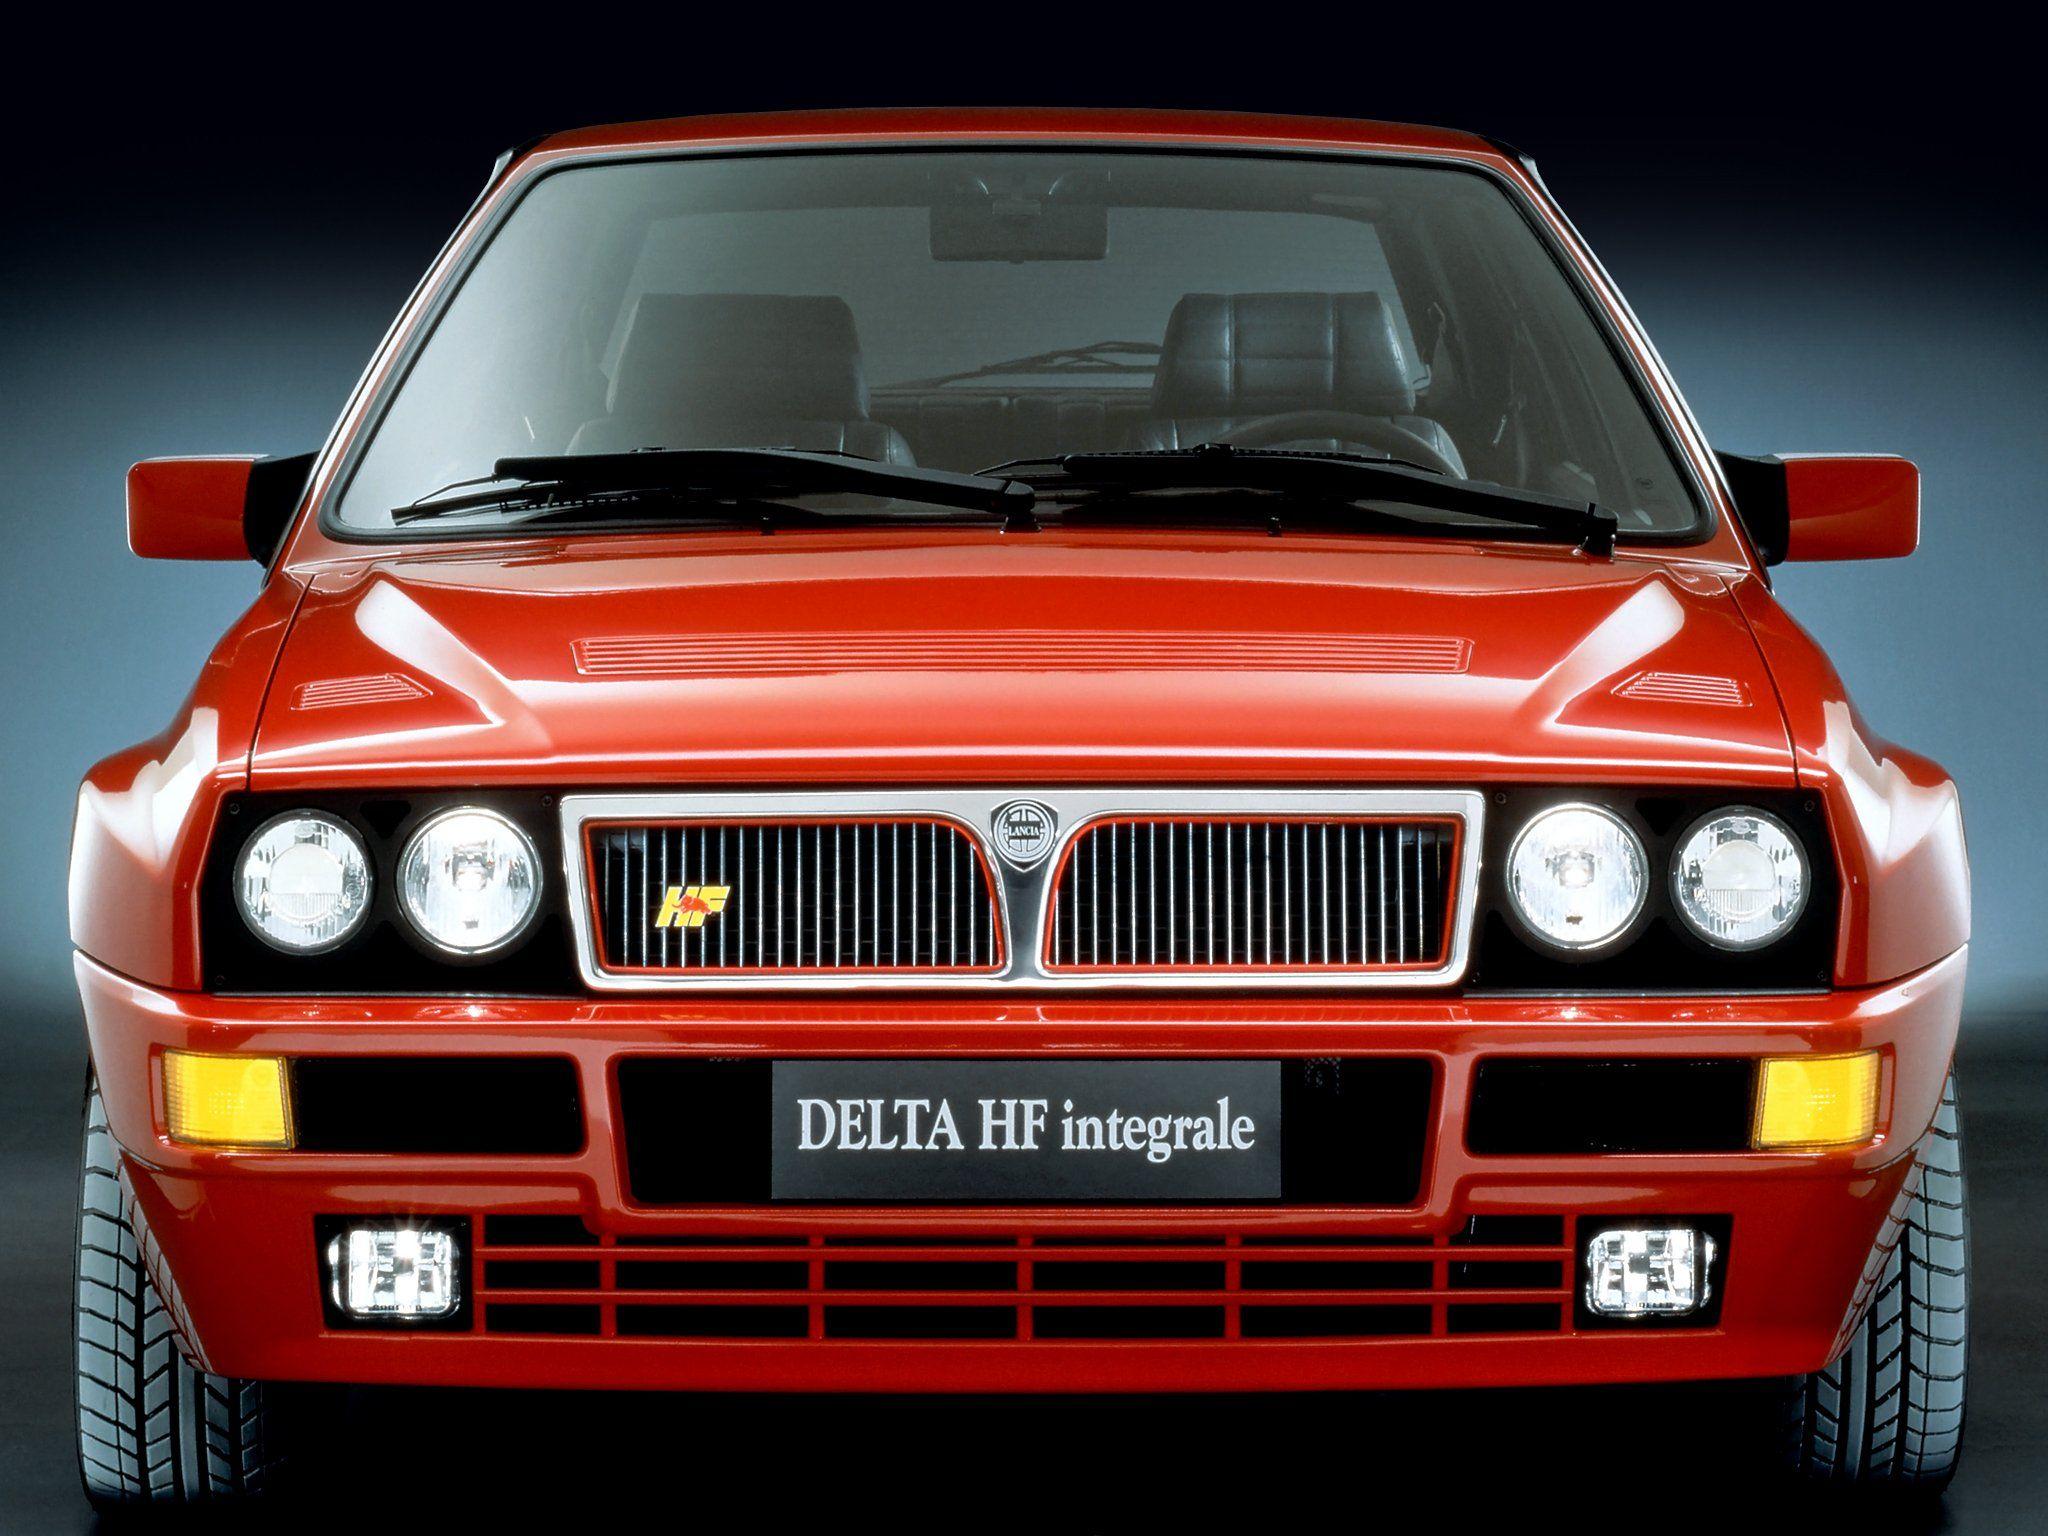 1991 93 Lancia Delta H F Integrale Evo 831 Wallpaperx1536